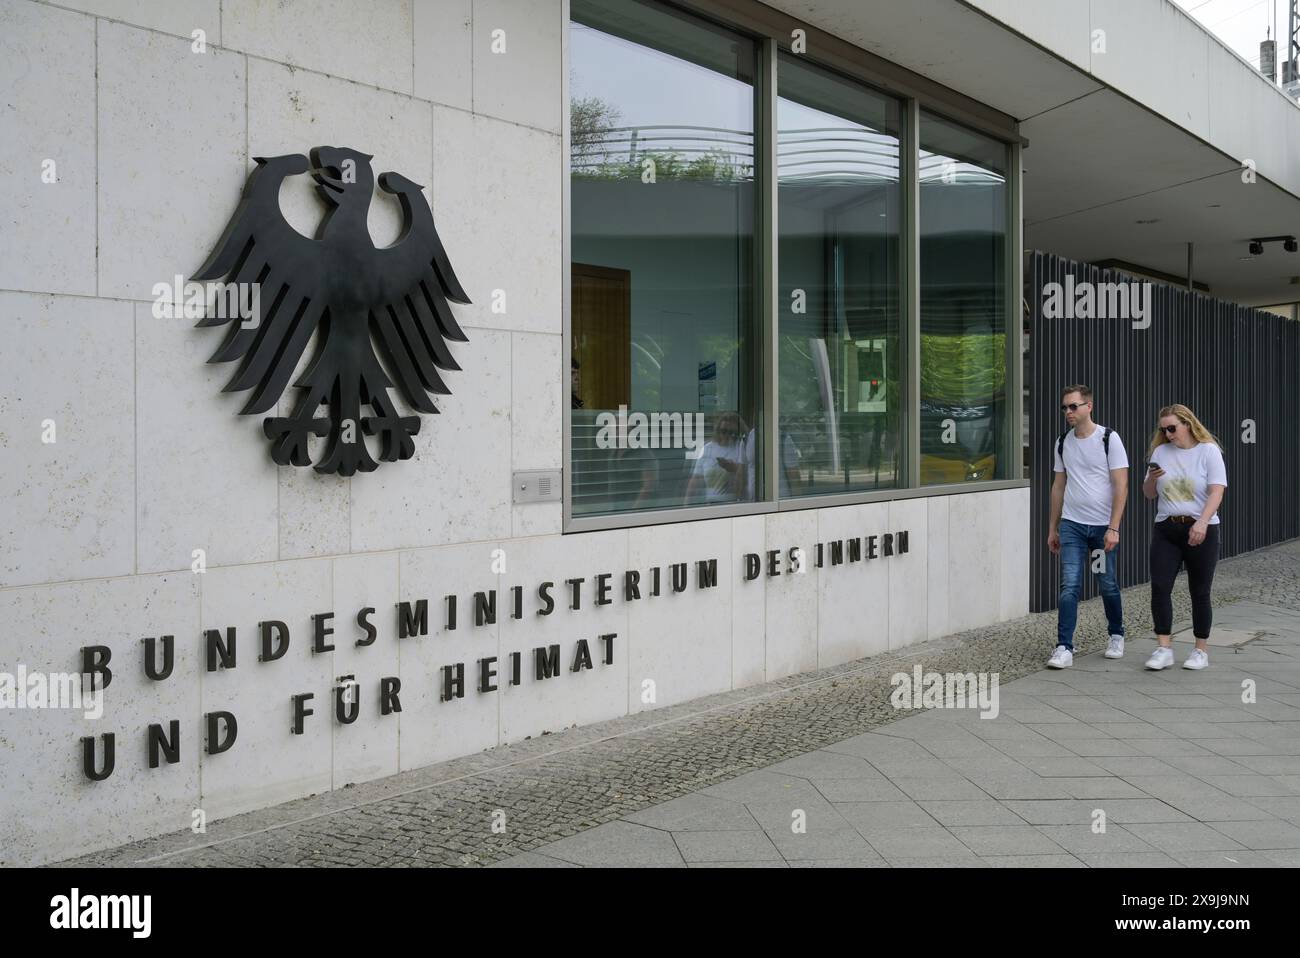 Bundesministerium des Innern und für Heimat, Zentrale, Alt-Moabit, Mitte, Berlino, Germania Foto Stock